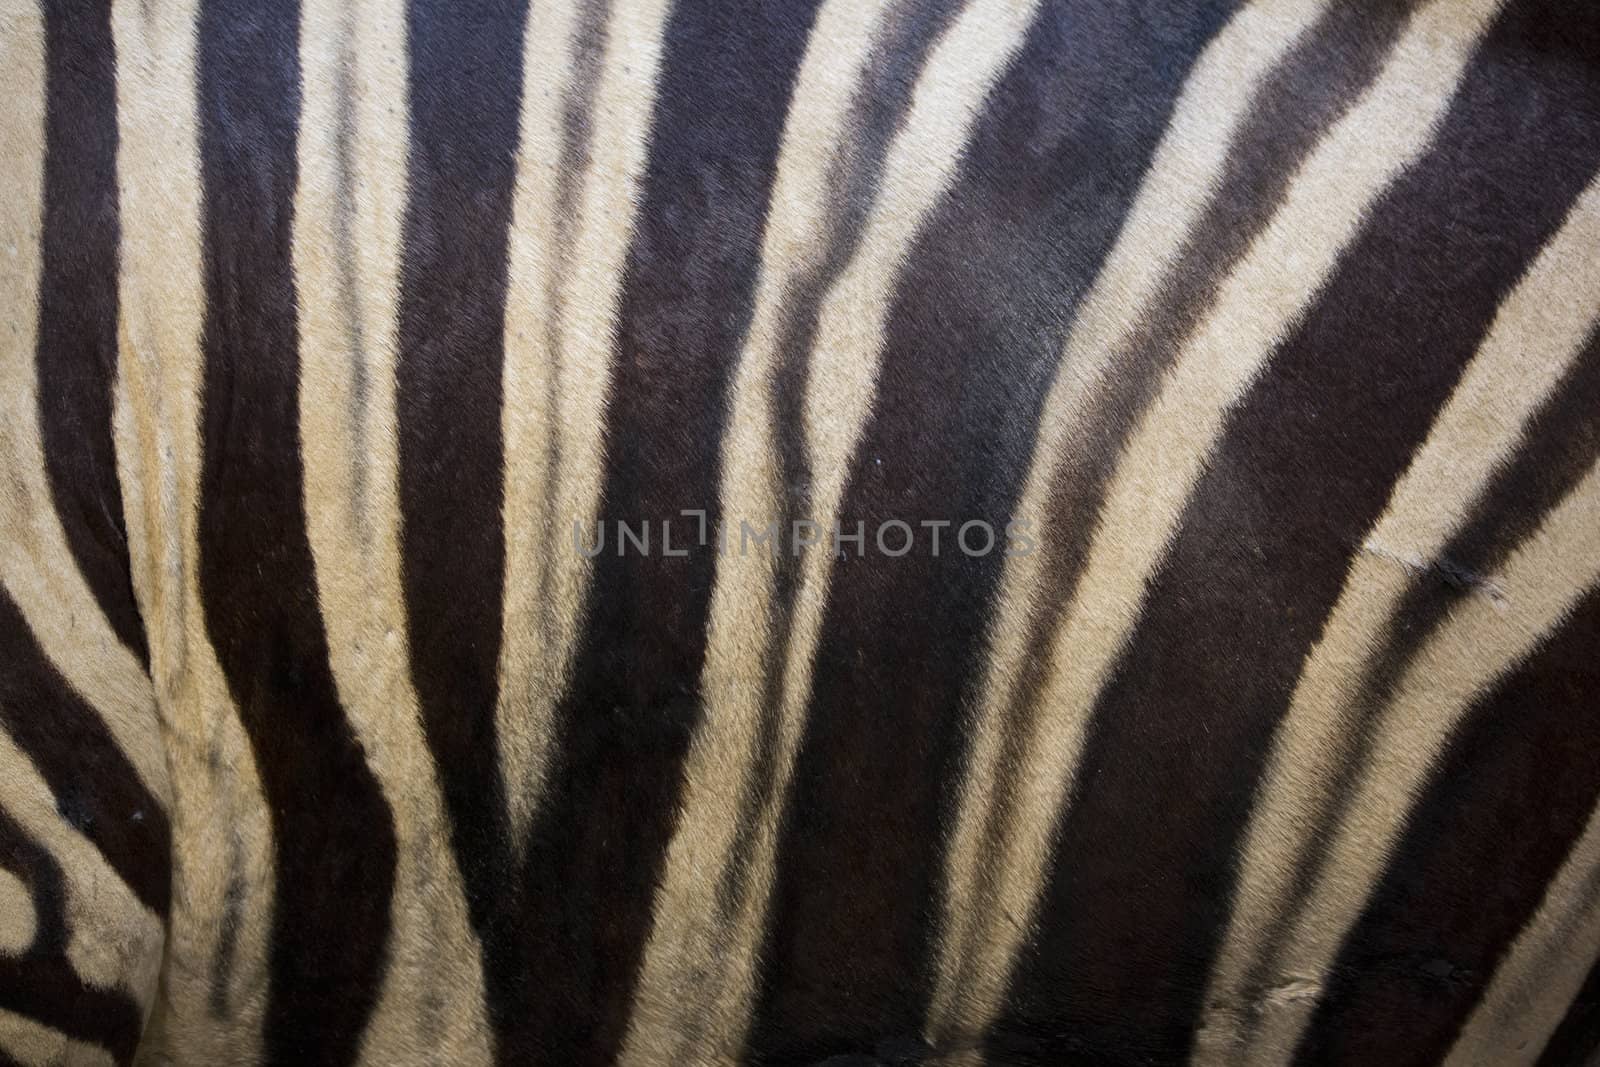 close up of zebra fur or skin.